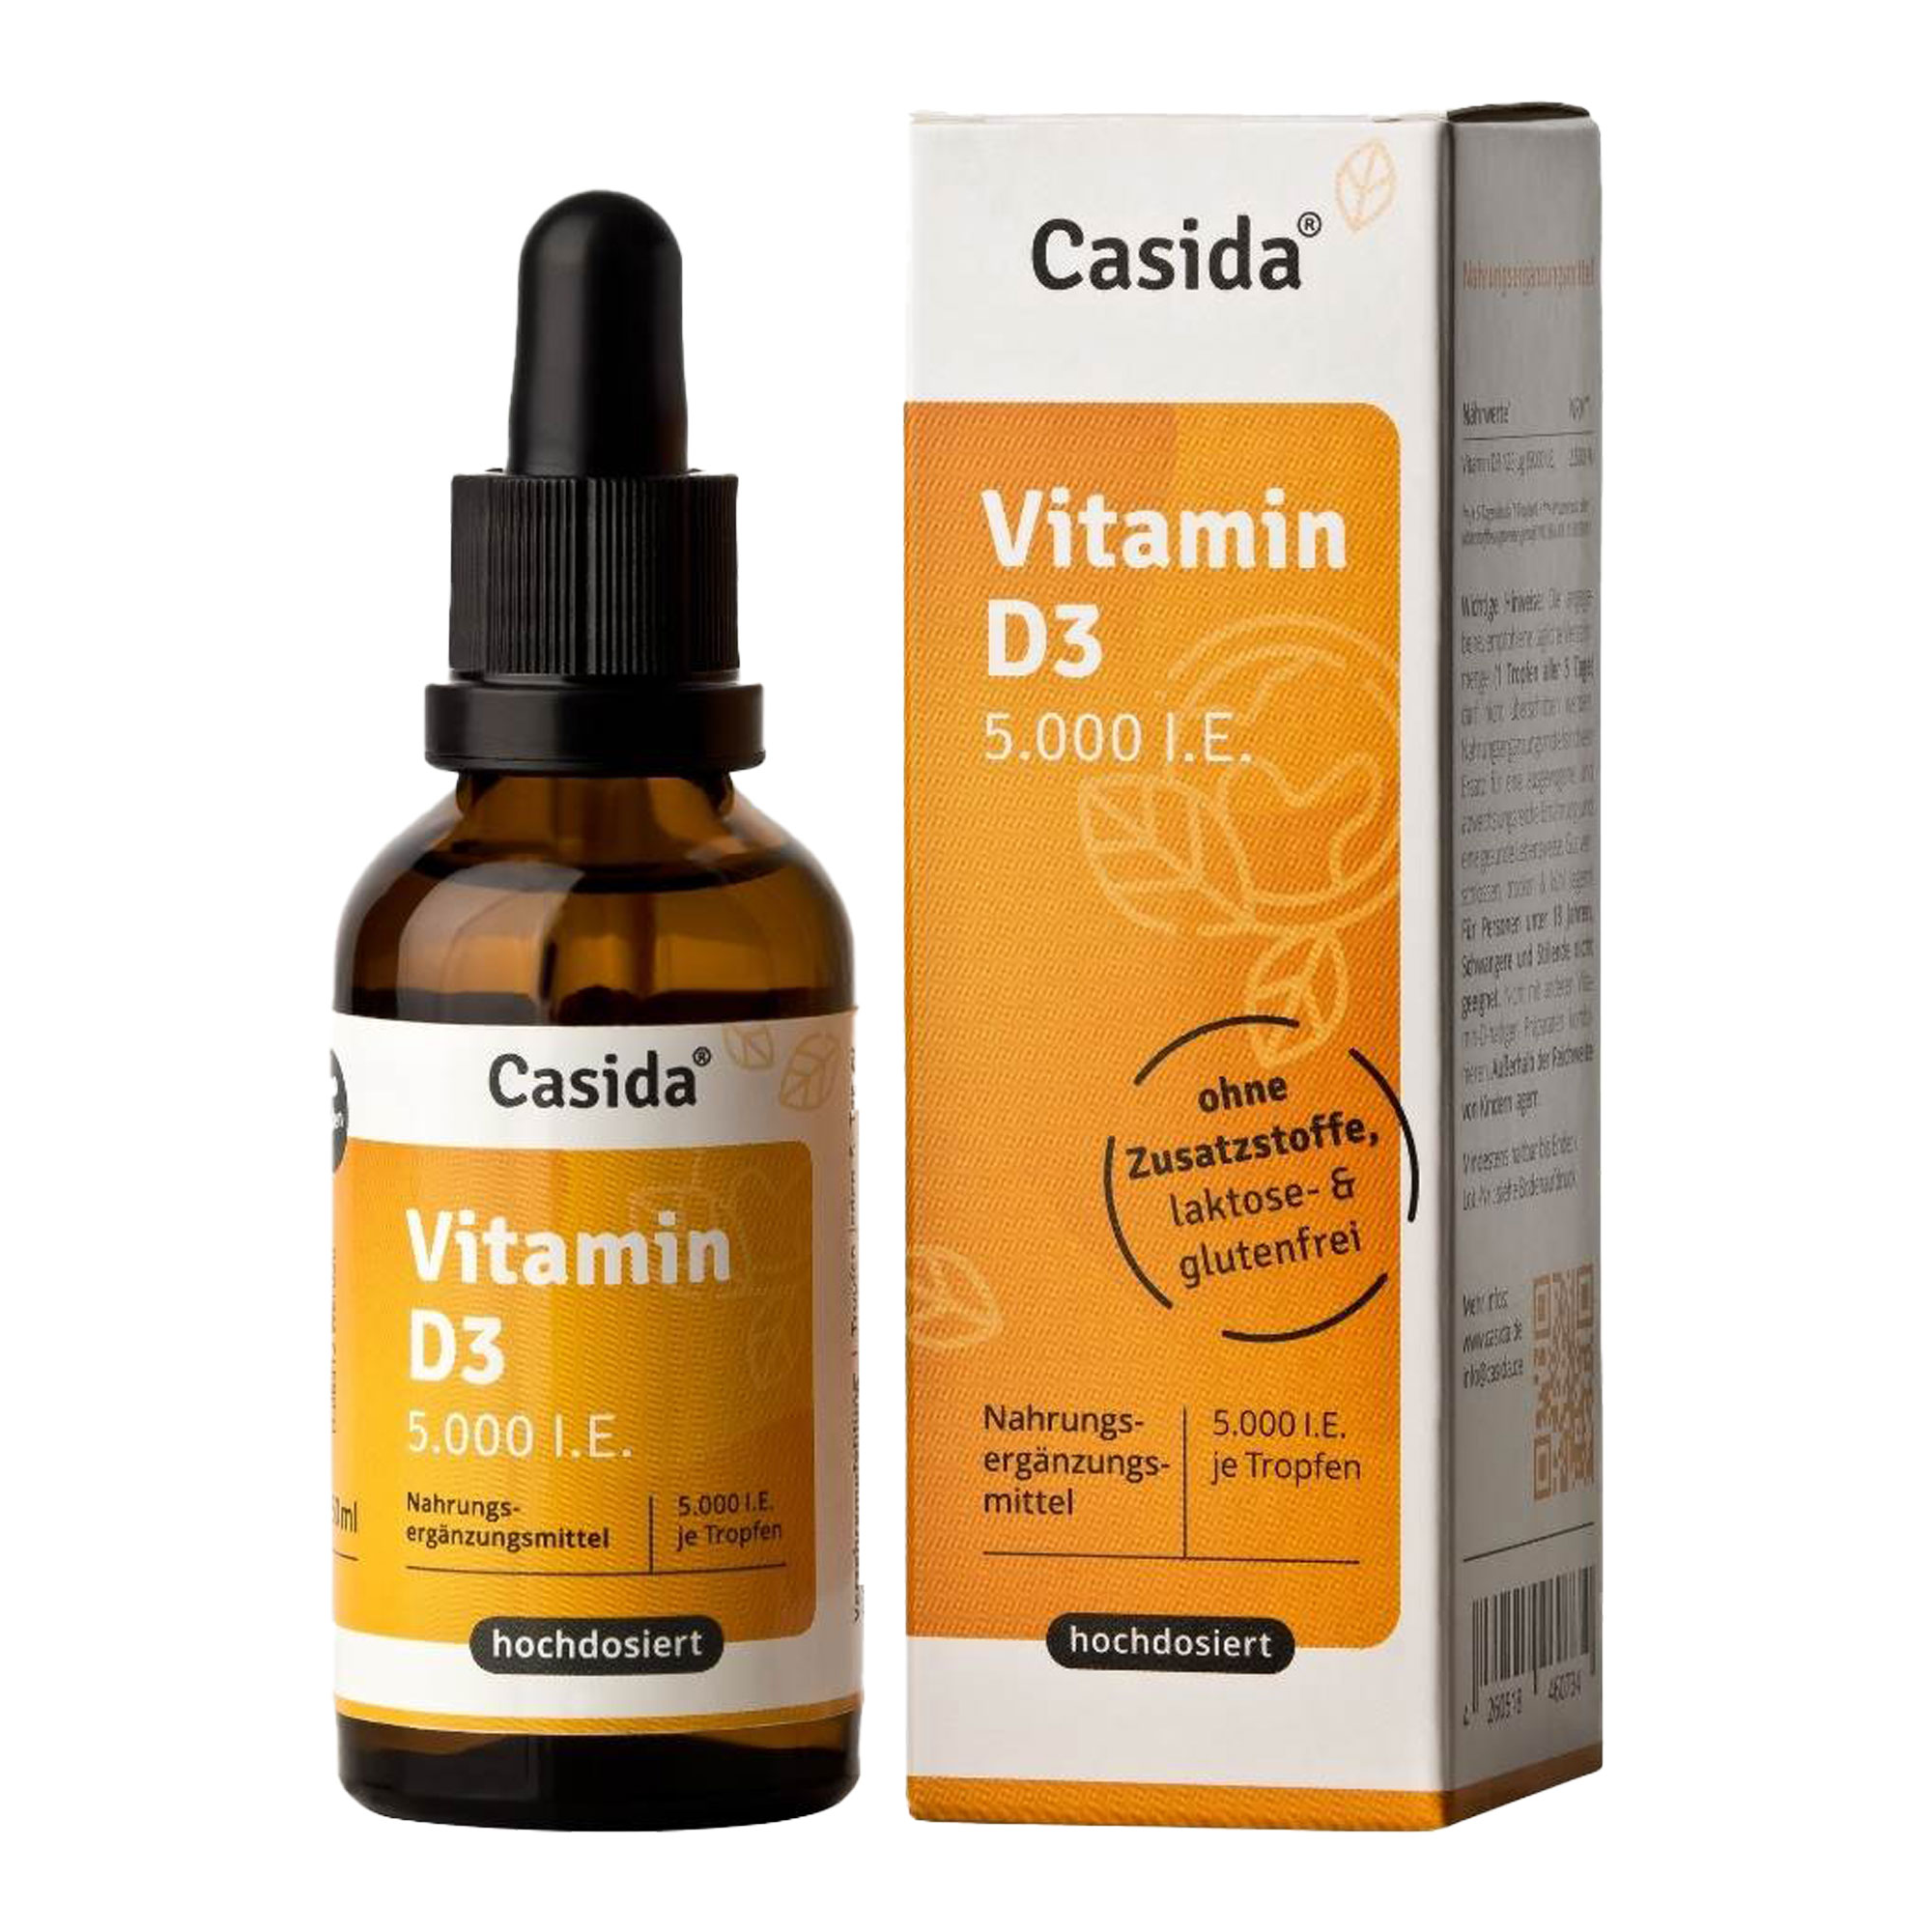 Nahrungsergänzungsmittel mit hochdosiertem Vitamin D3.